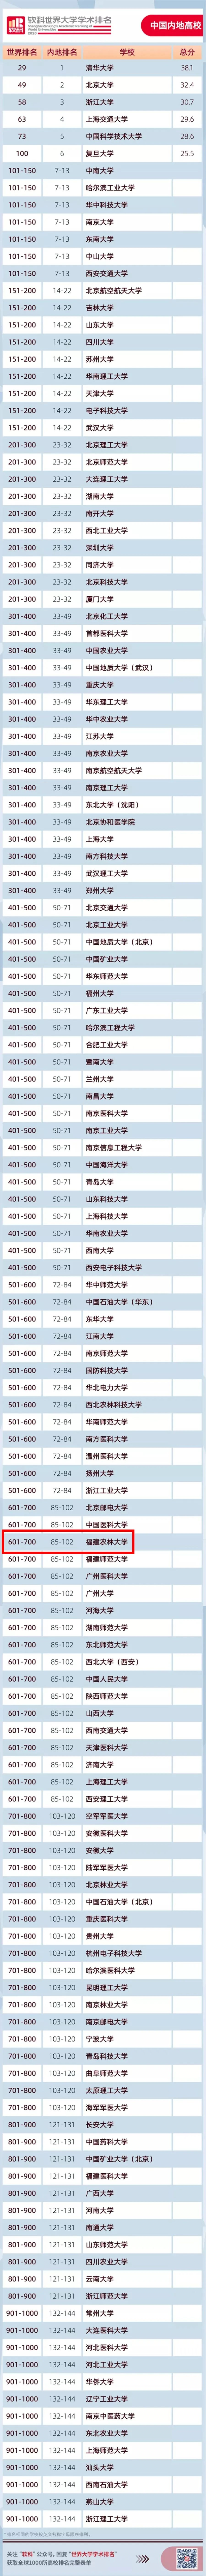 2020年复旦版医院排_2020年上海高校排名公布,榜首不是复旦,上